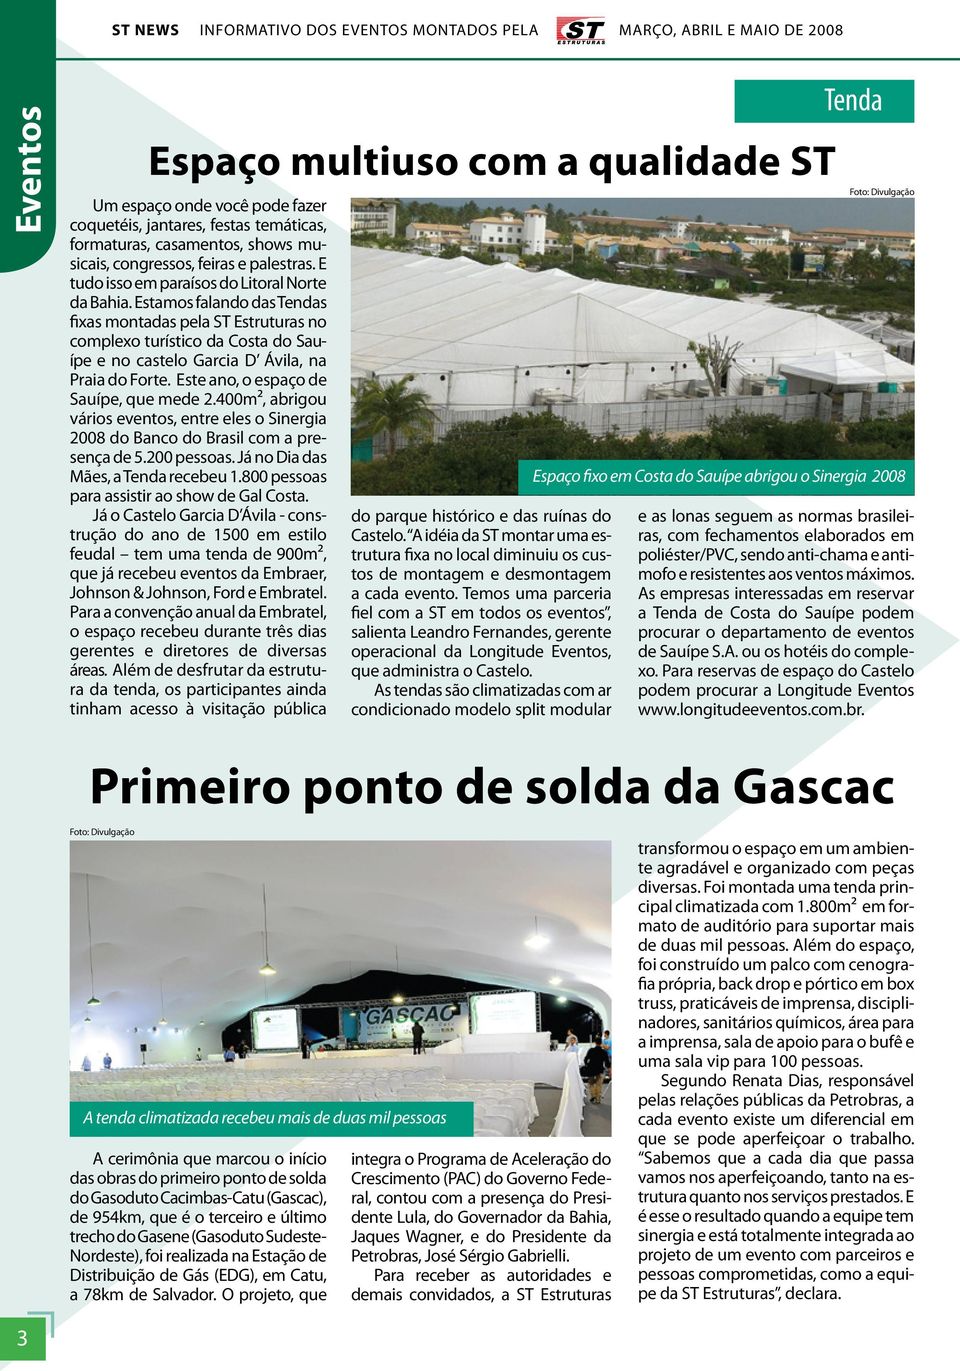 Este ano, o espaço de Sauípe, que mede 2.400m², abrigou vários eventos, entre eles o Sinergia 2008 do Banco do Brasil com a presença de 5.200 pessoas. Já no Dia das Mães, a Tenda recebeu 1.